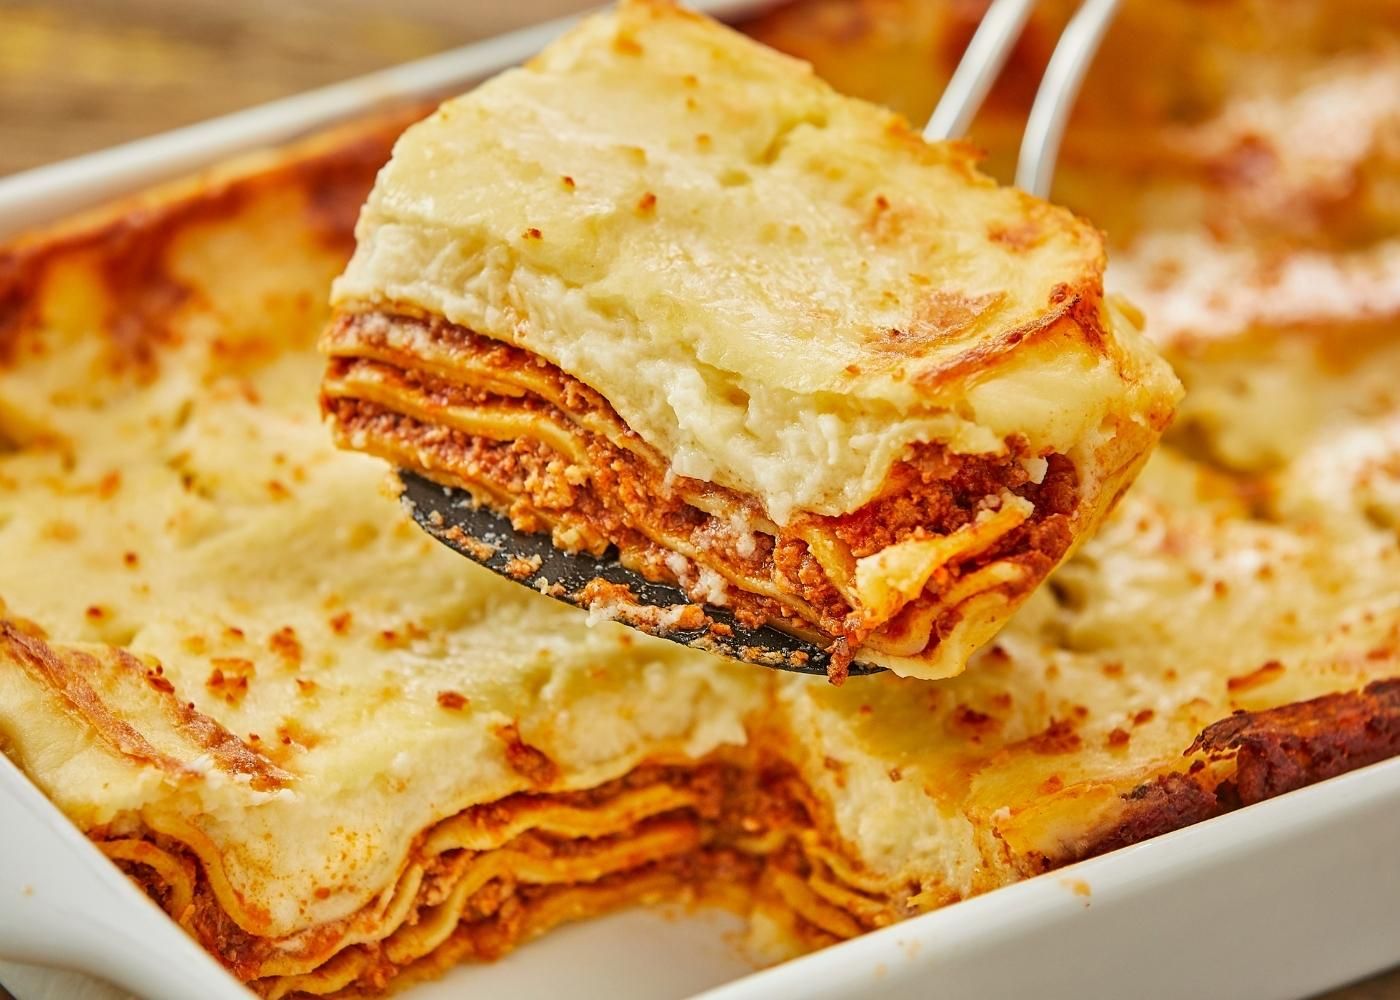 Classic beef lasagna - serves 4-6